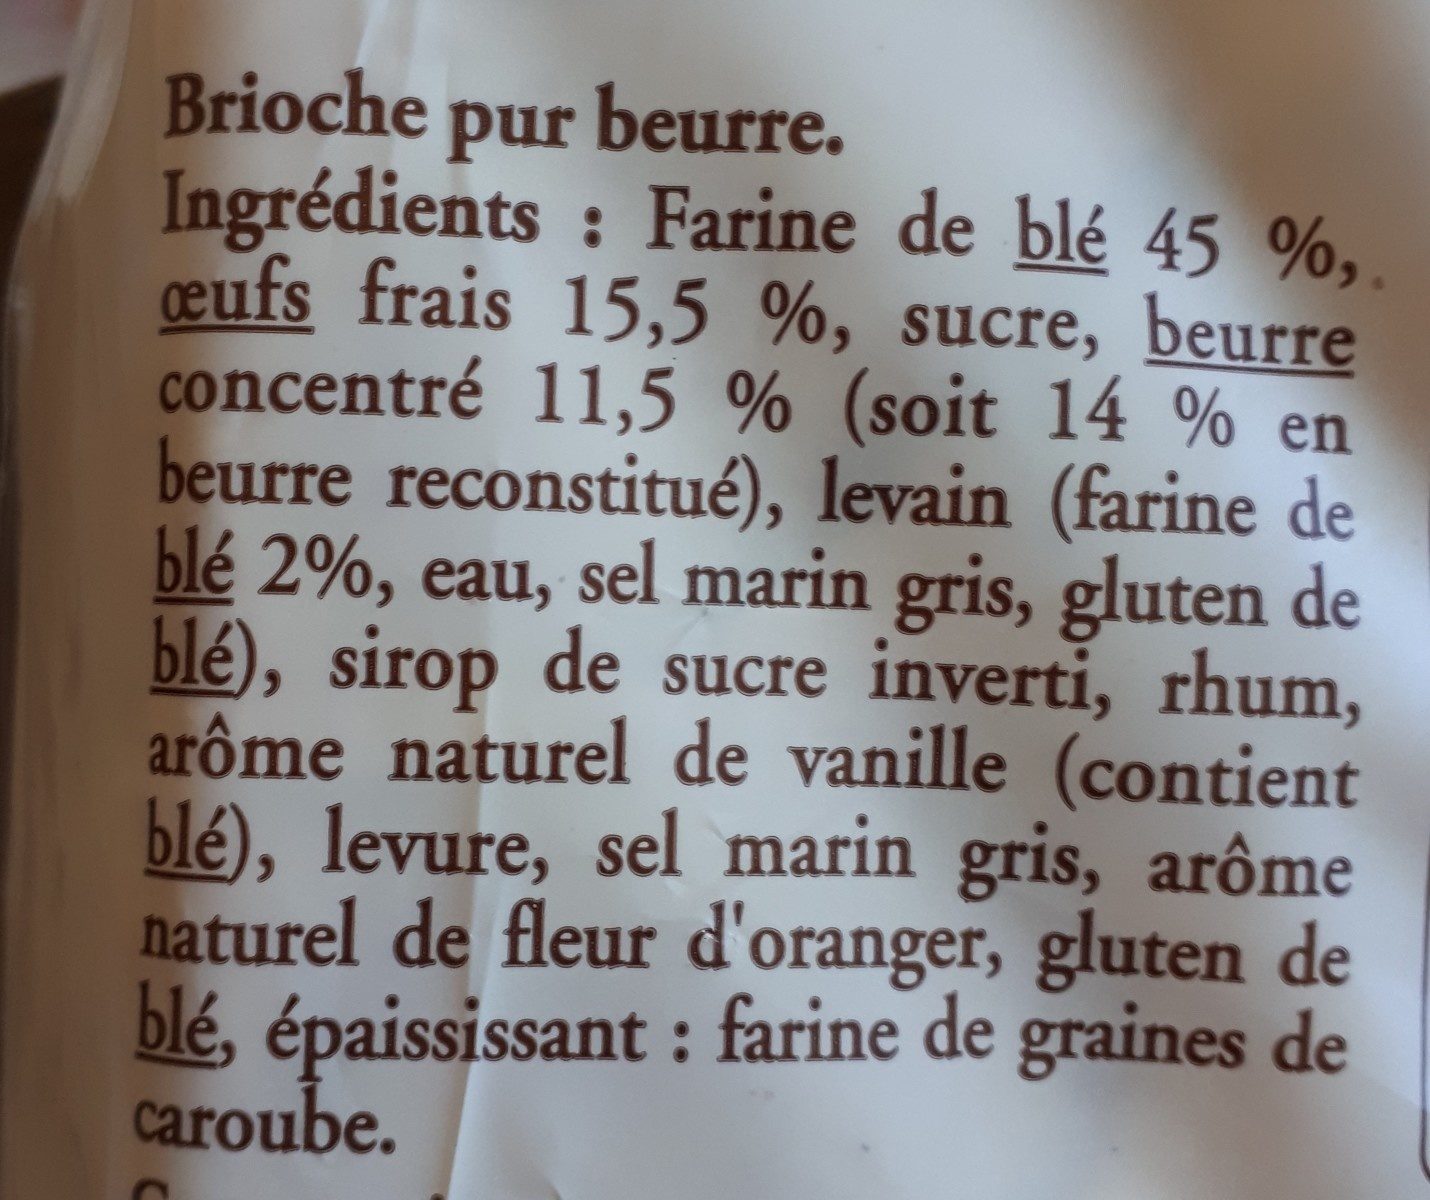 Brioche vendéenne Igp - Ingredients - fr